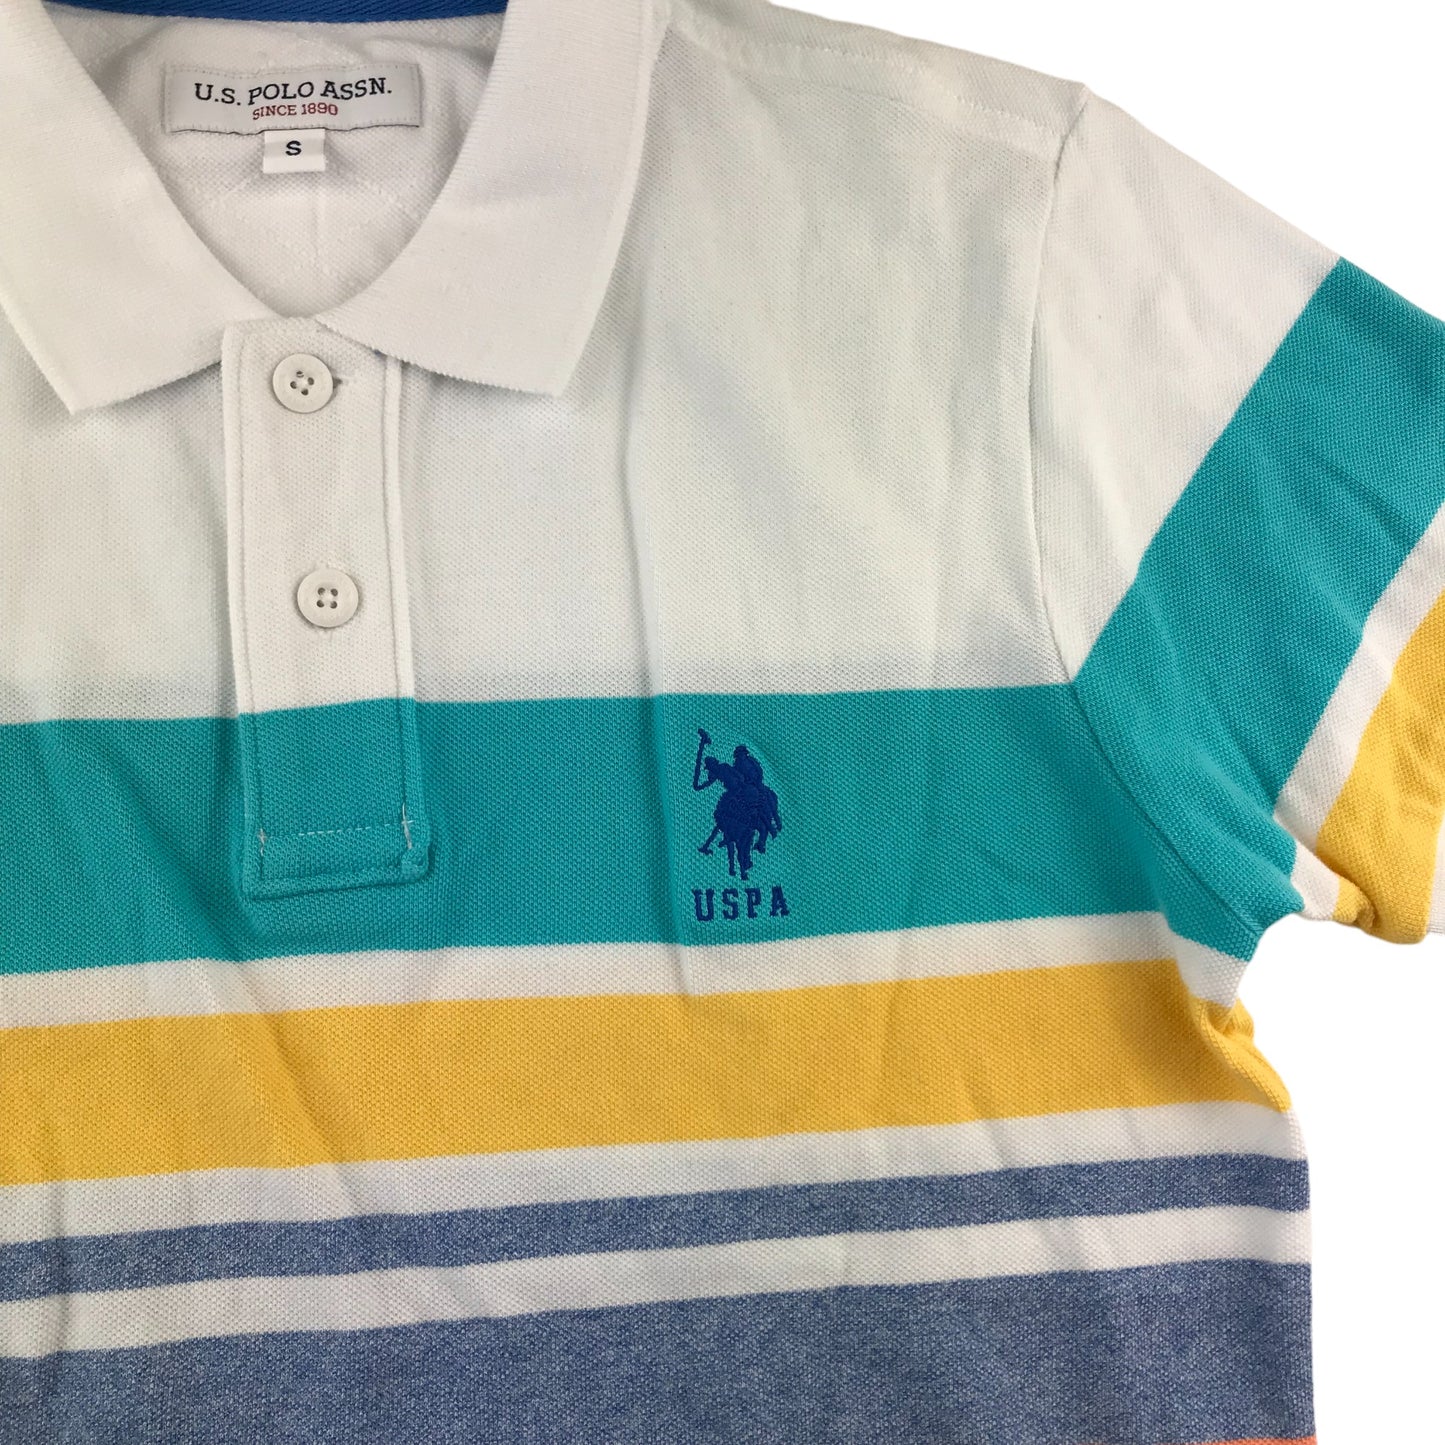 US Polo Assn Polo Shirt Size S Multicolour Stripy Short Sleeve Cotton